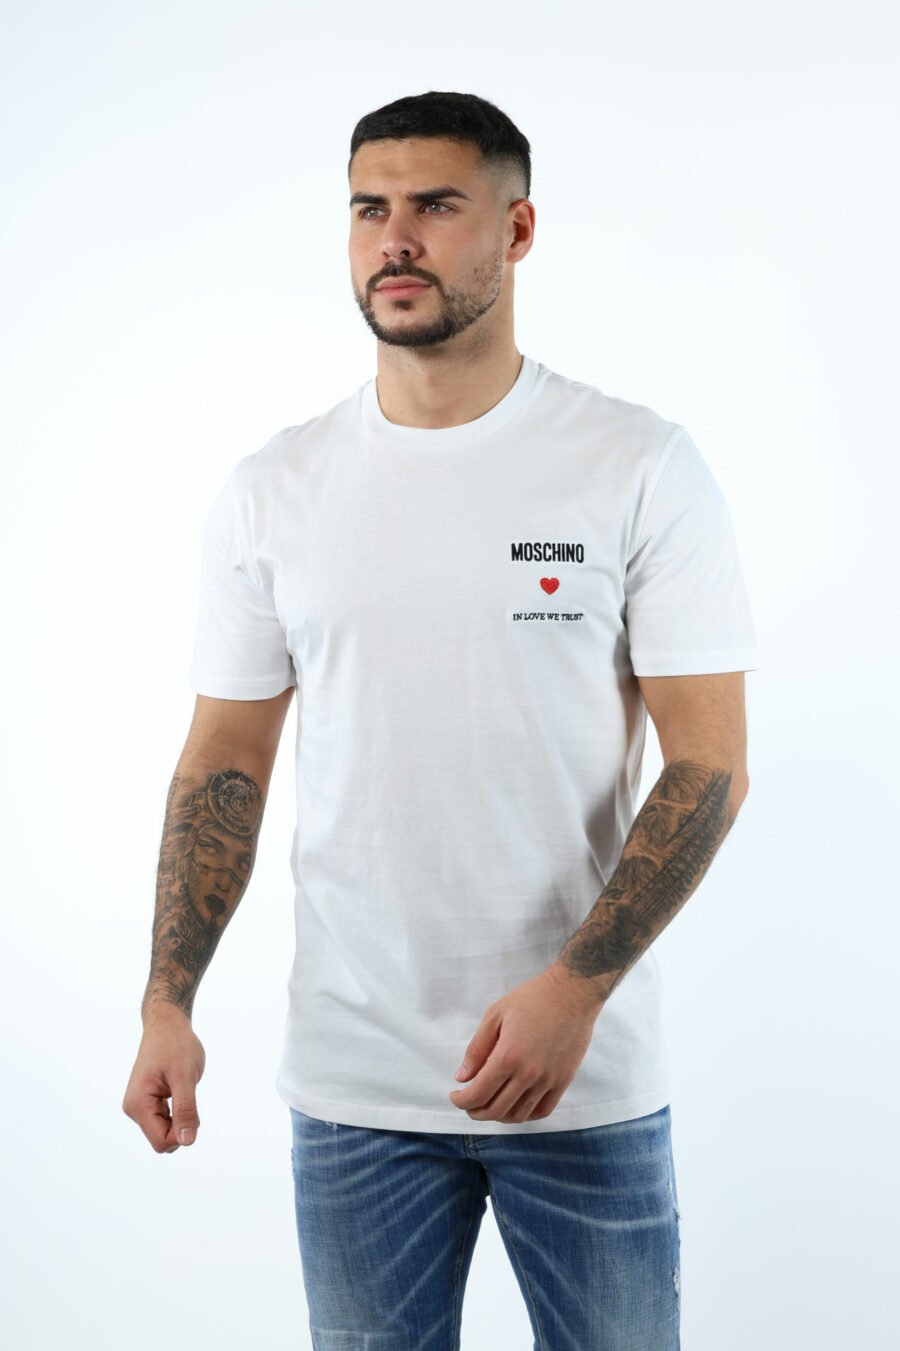 Weißes T-Shirt mit Minilogo "in love we trust" - 106642